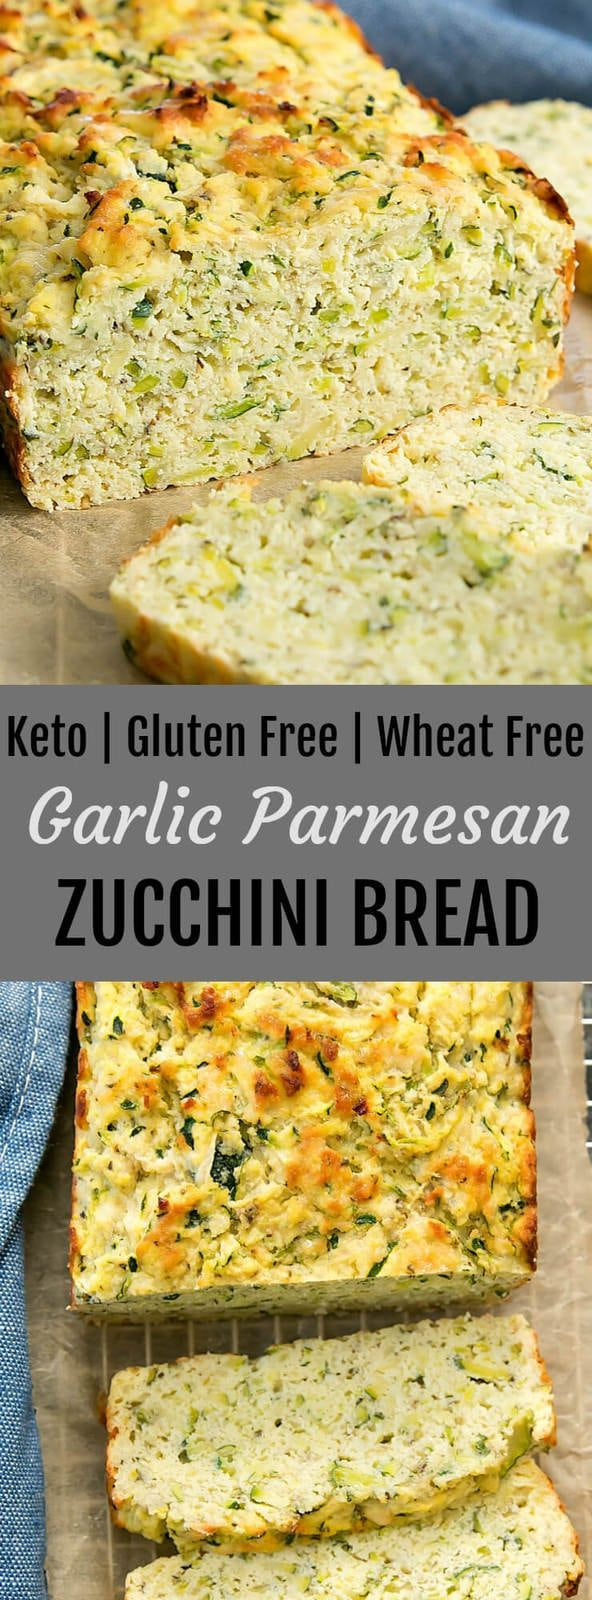 Keto Zucchini Bread Savory
 Garlic Parmesan Zucchini Bread Recipe